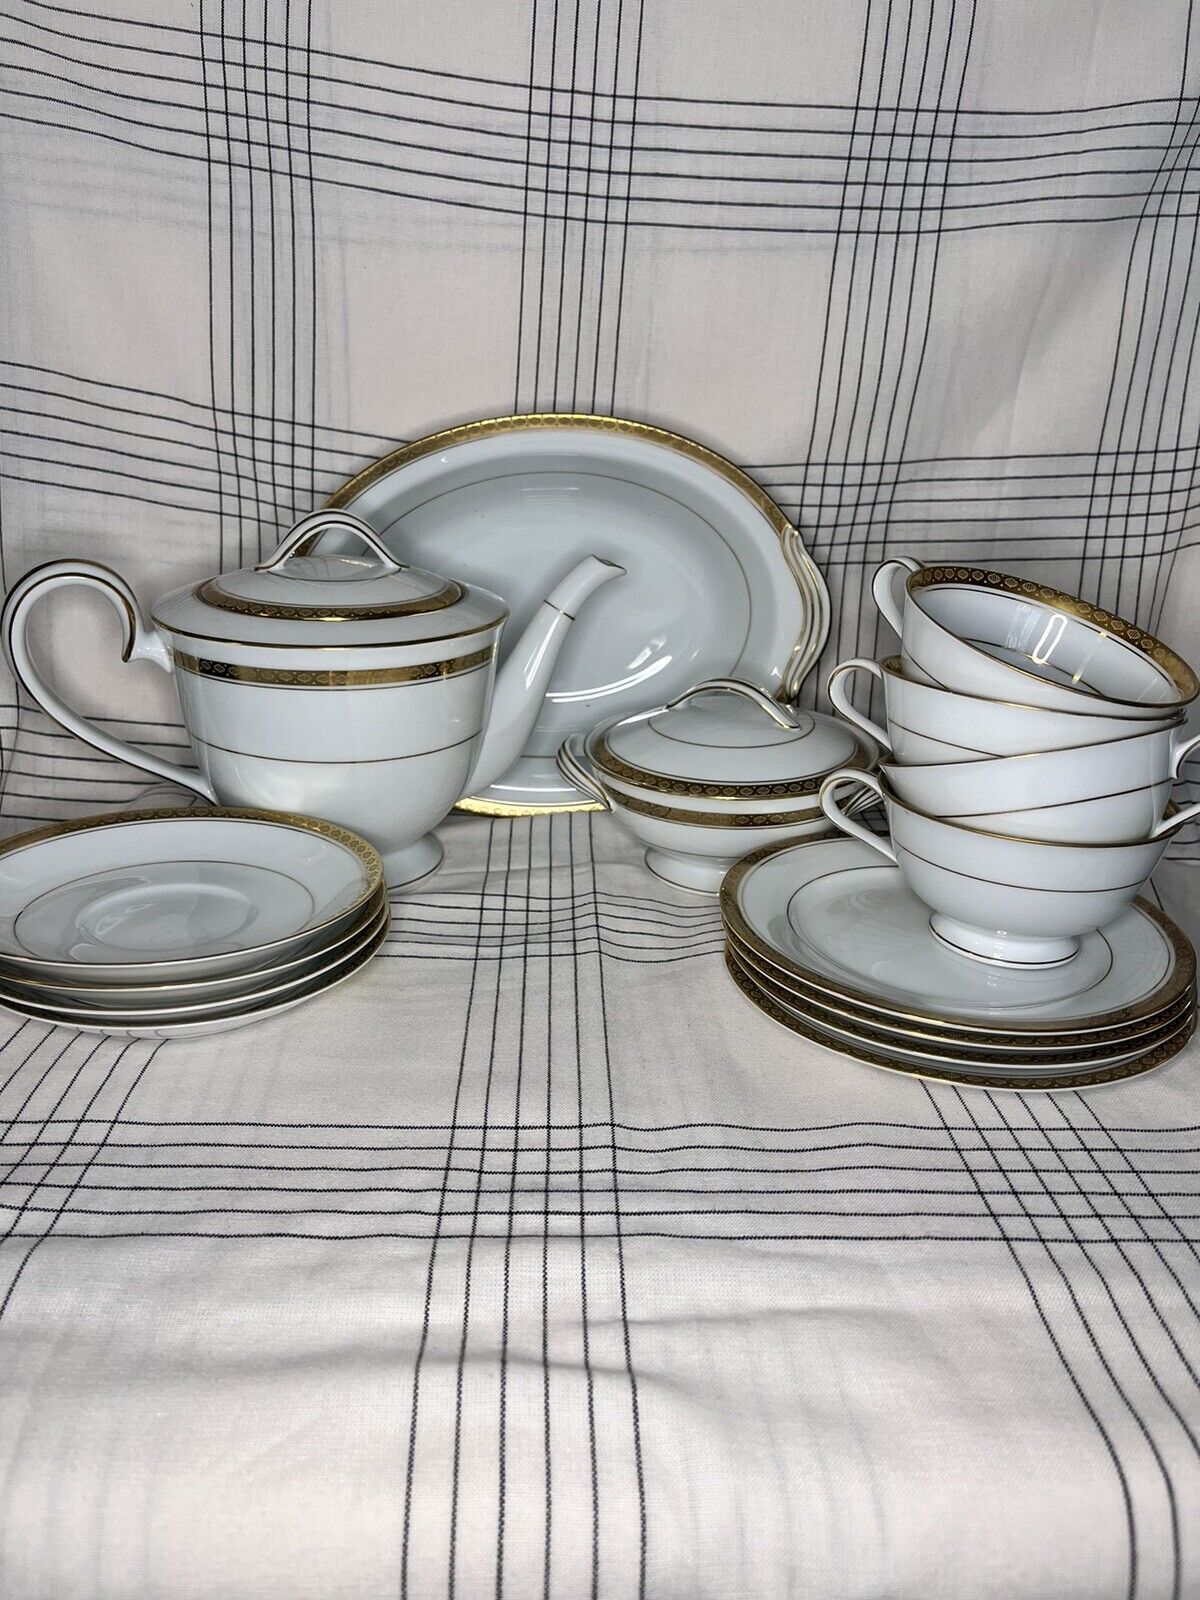 Noritake Goldridge China Tea Set Teapot w Lid, 4 Teacups and Saucers, & more